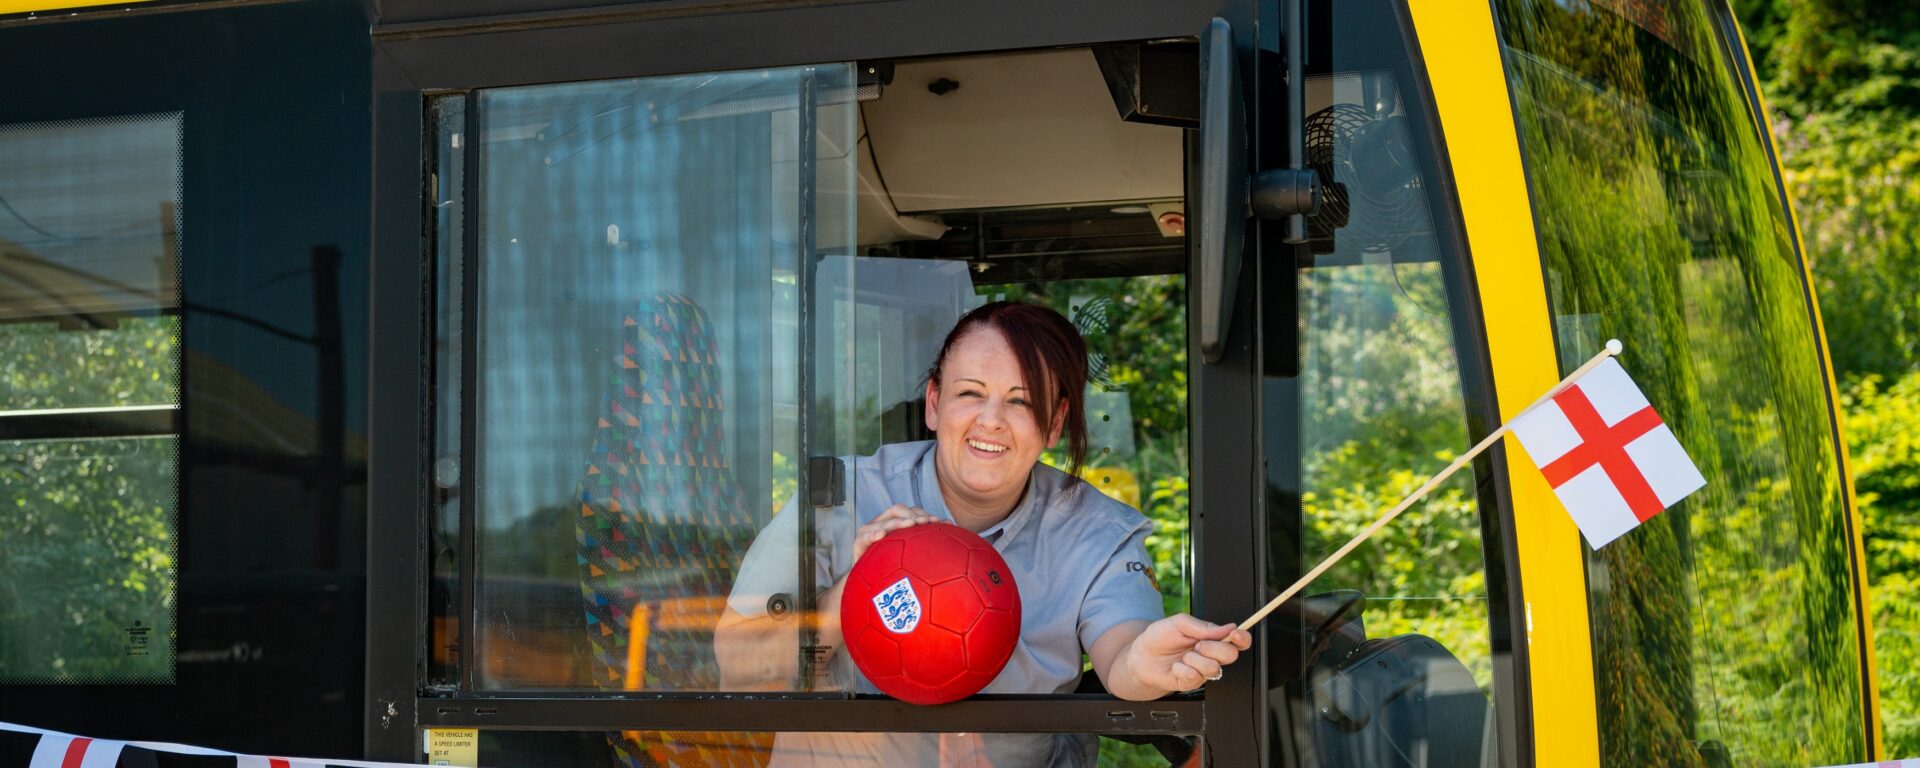 Conductrice de bus penchée à la fenêtre d'un bus jaune qui porte le nom de la joueuse Keira Walsh. Elle agite un fanion aux couleurs de l'Angleterre, et tient un ballon de foot aux couleurs de l'Angleterre dans l'autre main